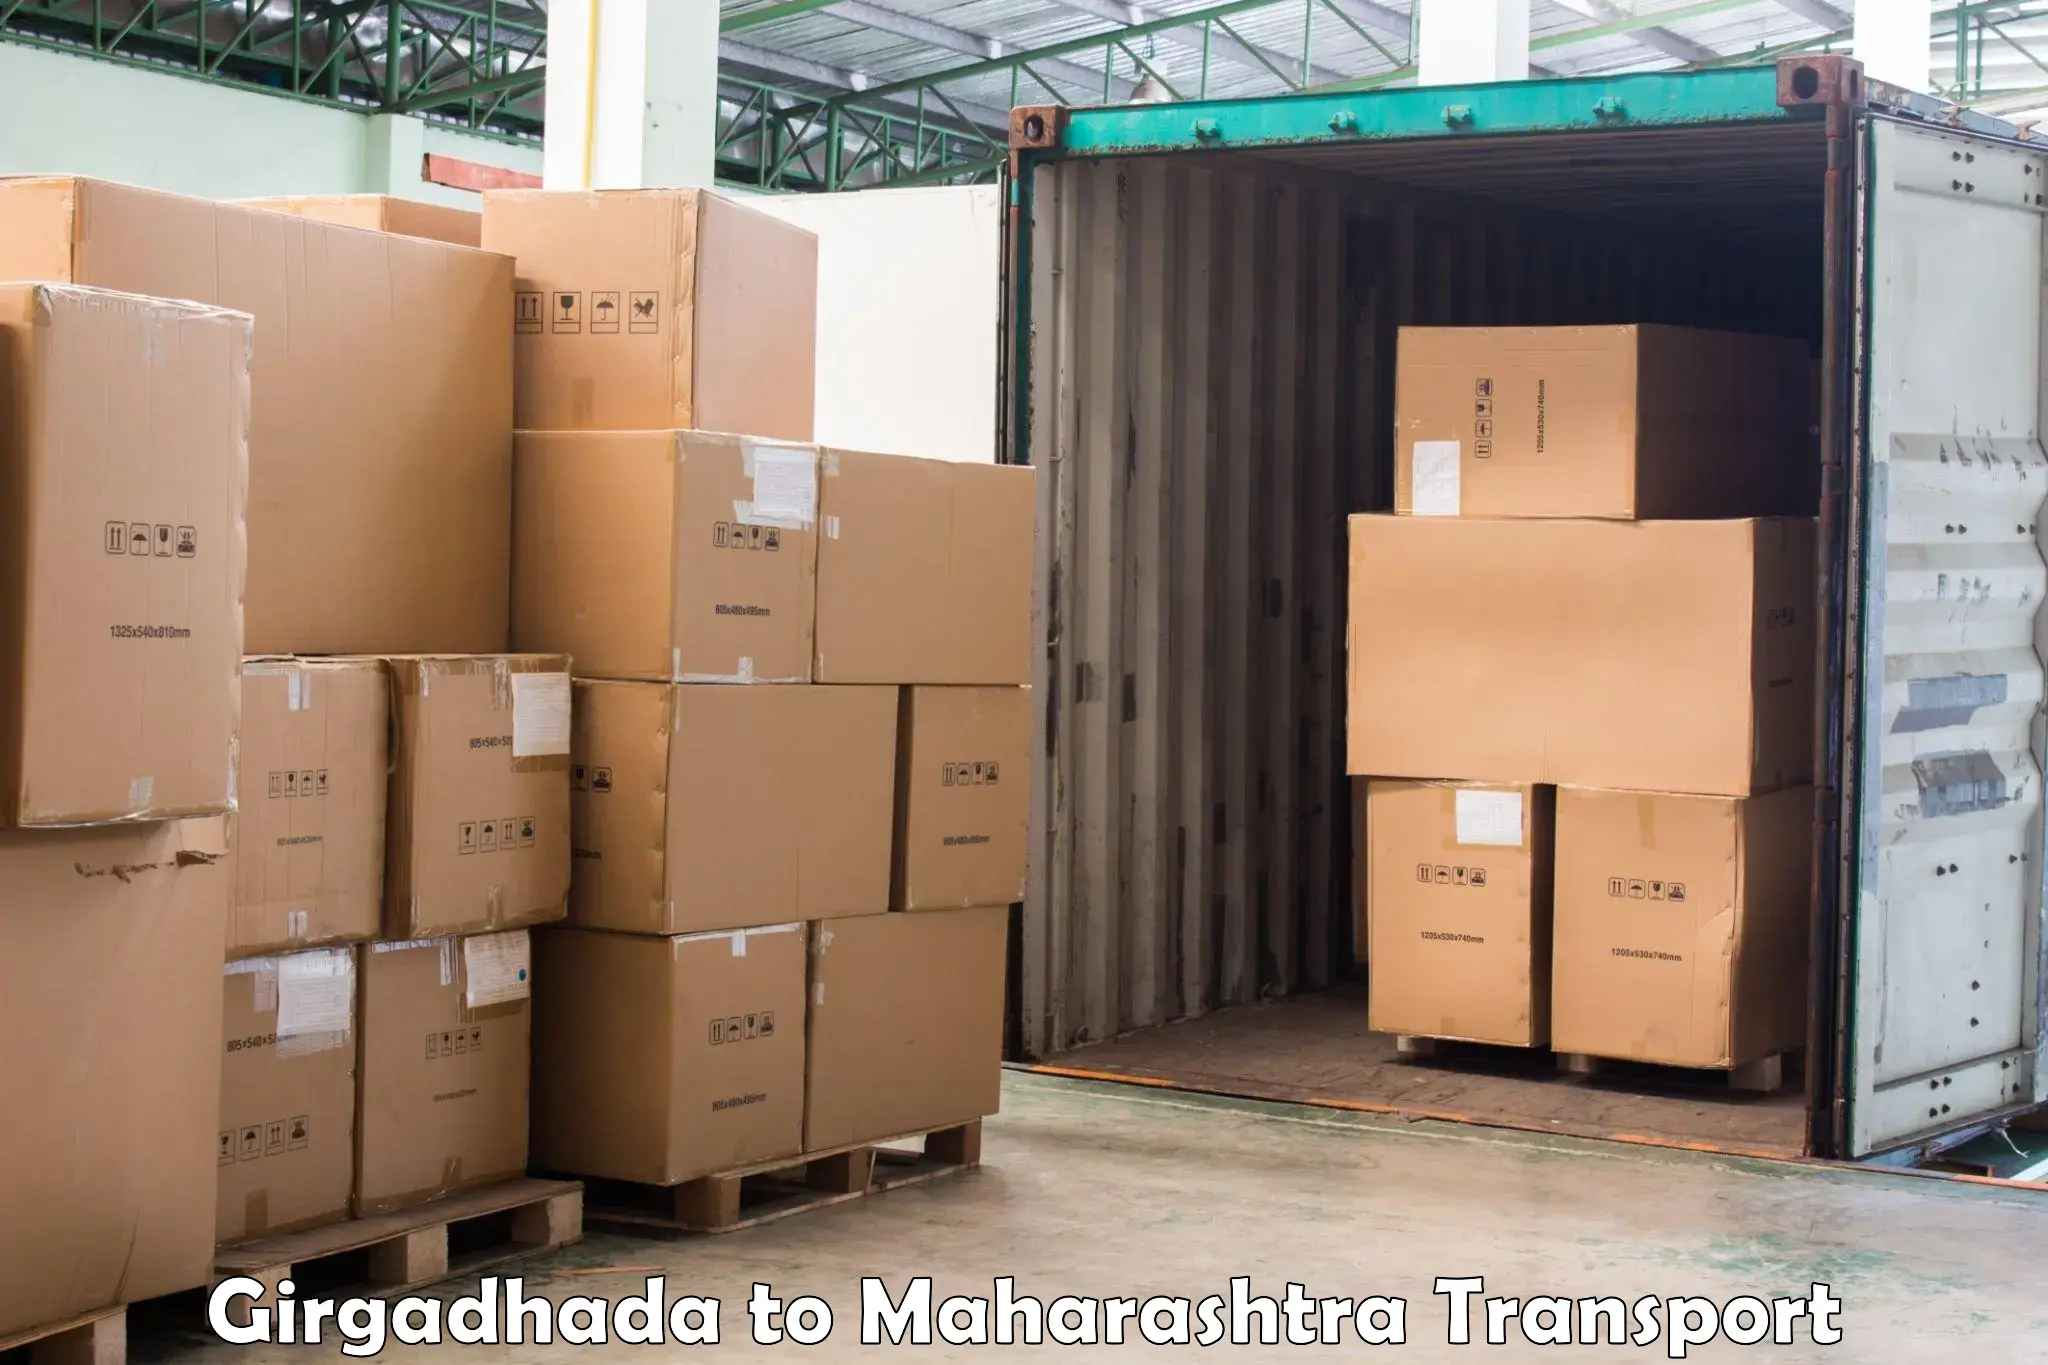 Truck transport companies in India Girgadhada to Gadhinglaj